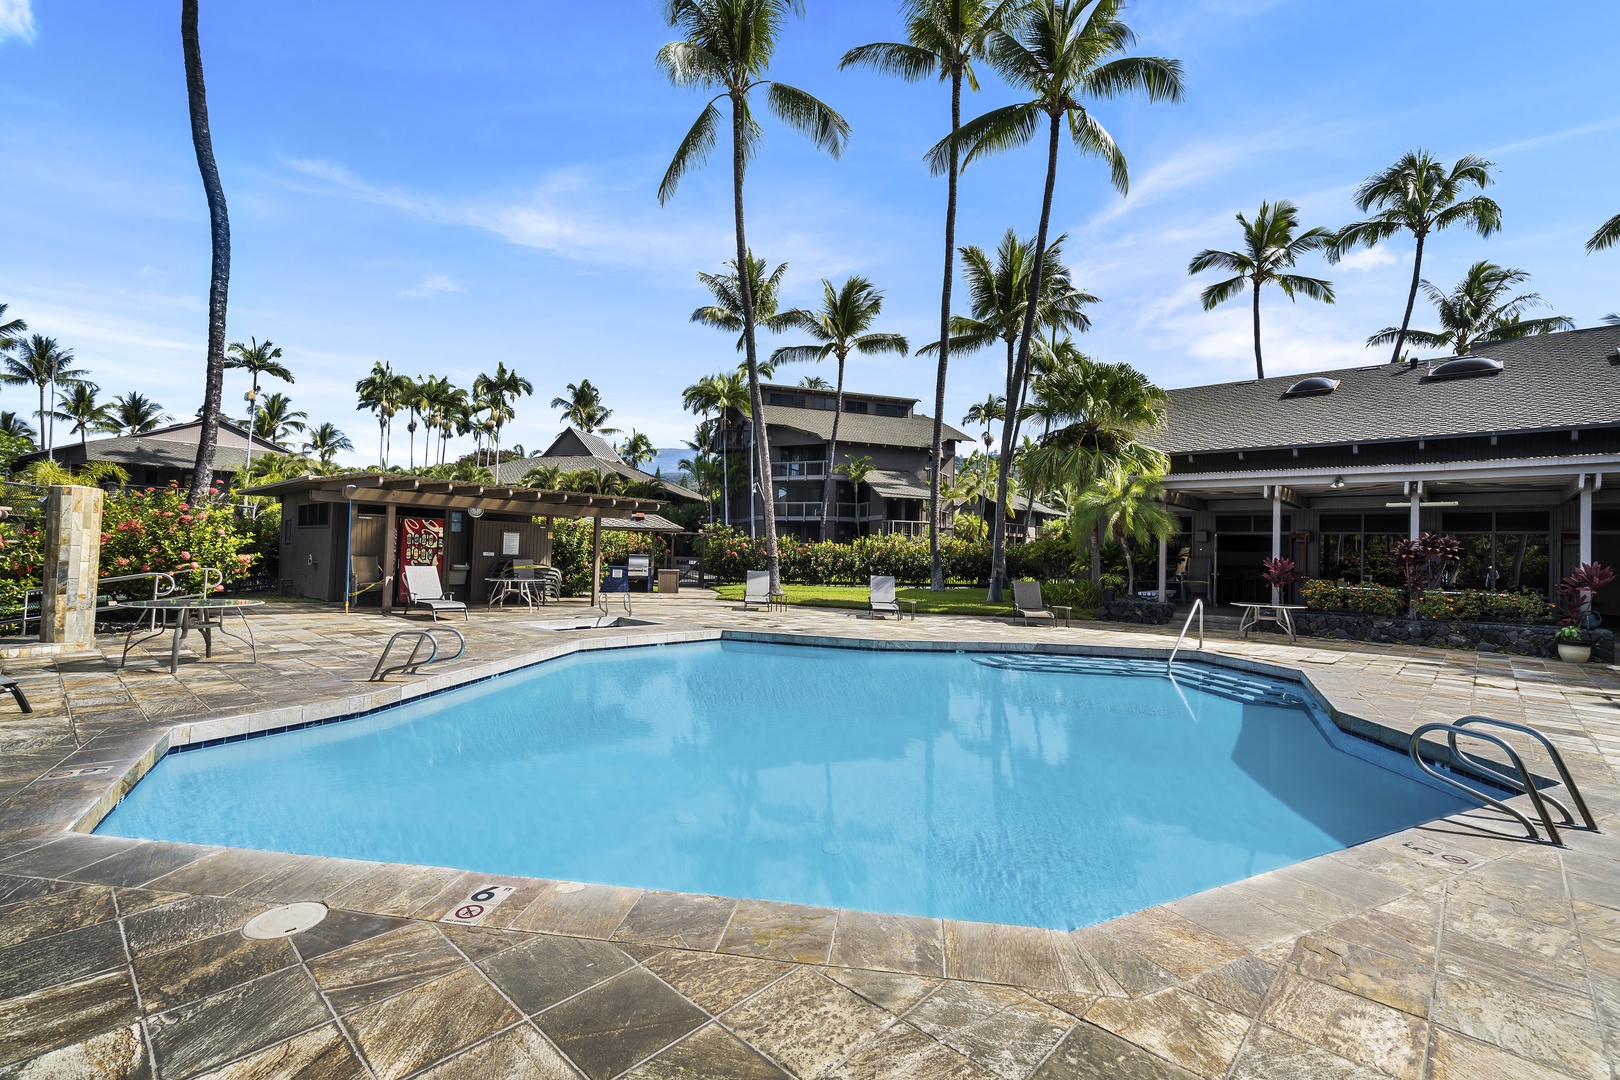 Kailua Kona Vacation Rentals, Kanaloa at Kona 3304 - Views from the pool deck